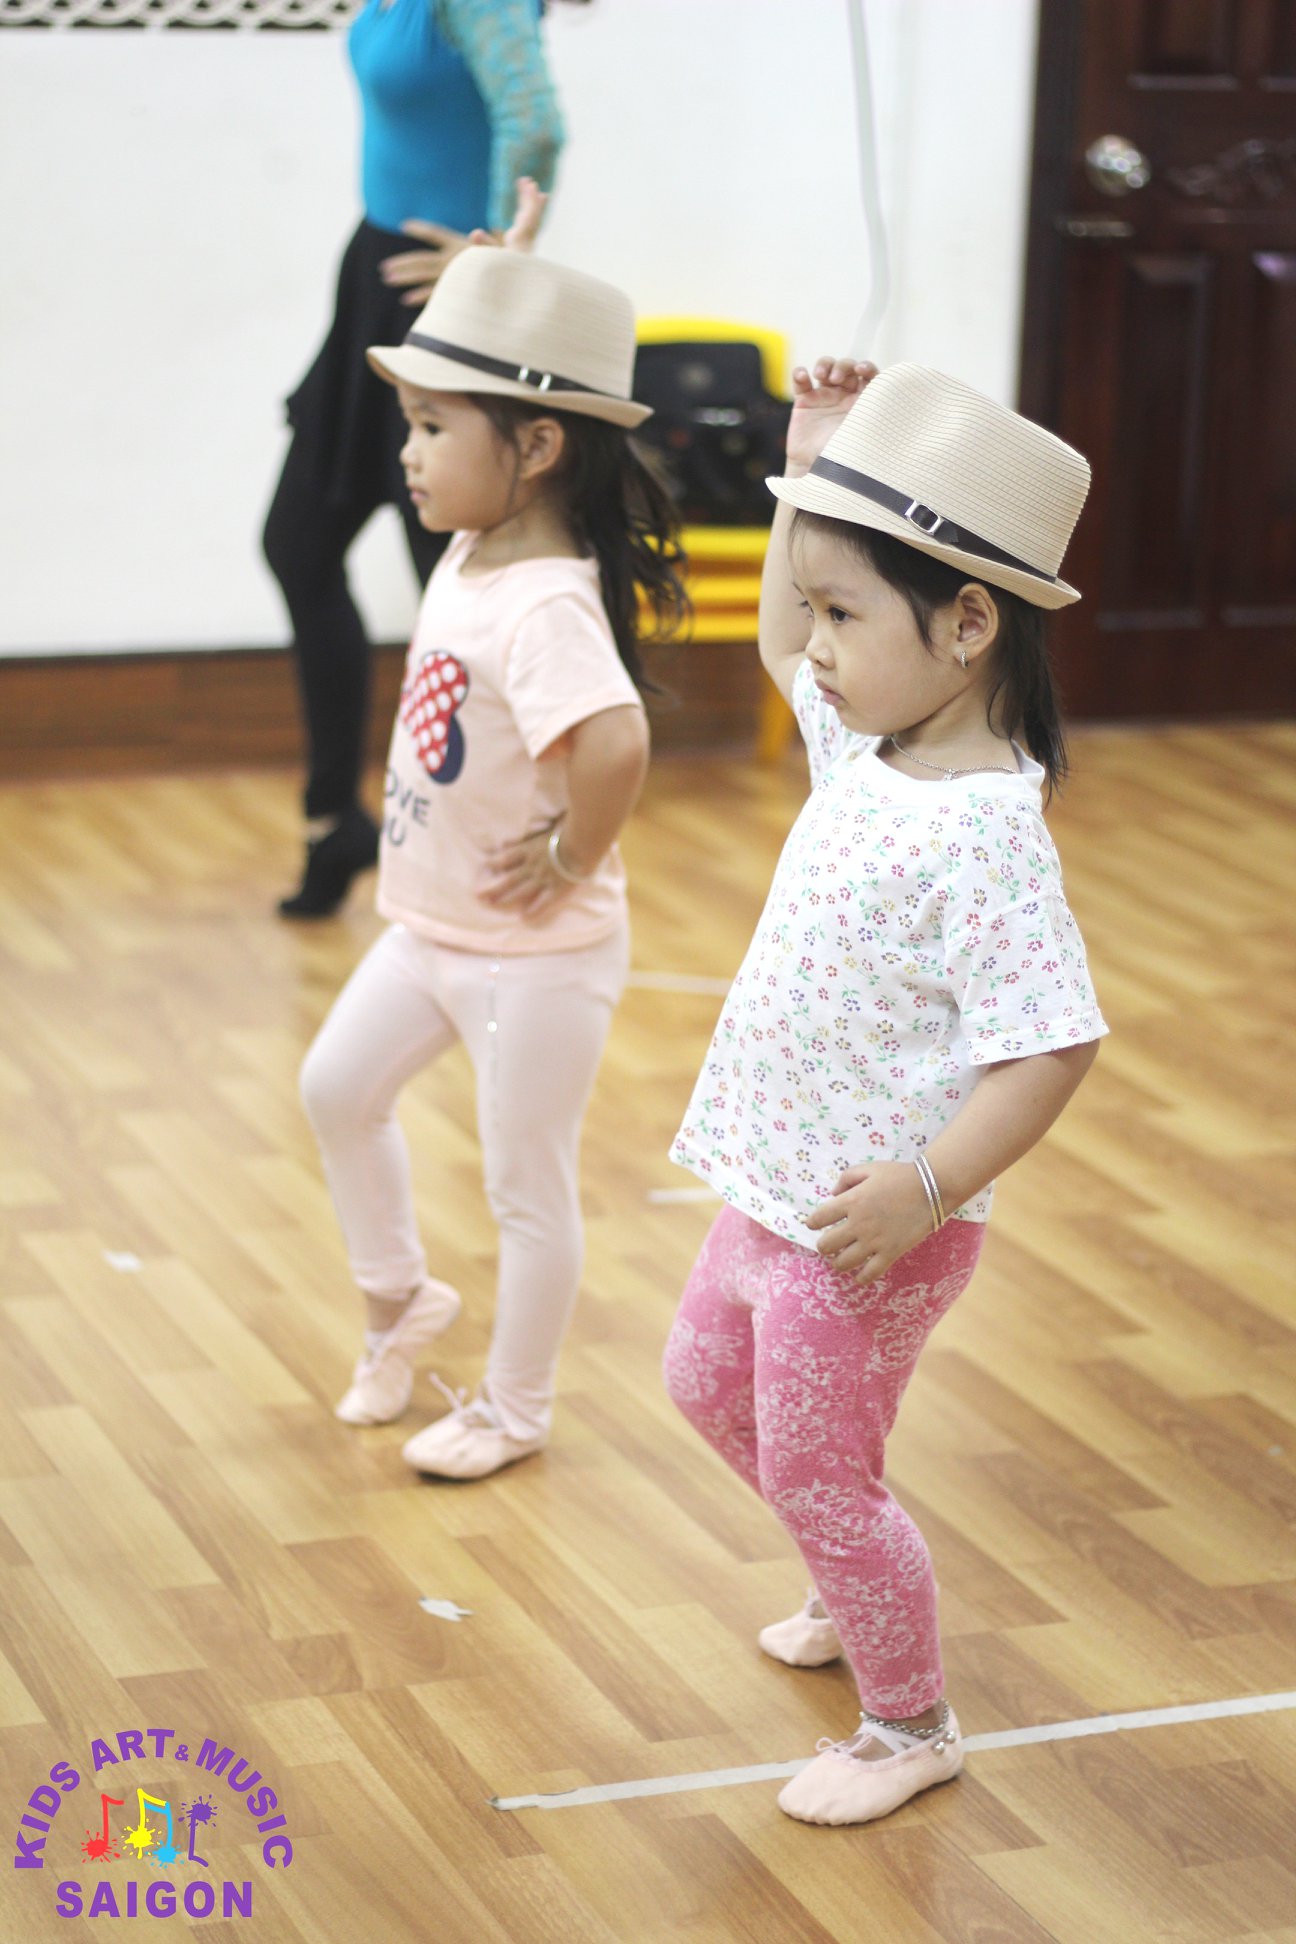 Tiêu chí tìm lớp dạy Nhảy ở Hà Nội - hình ảnh 1